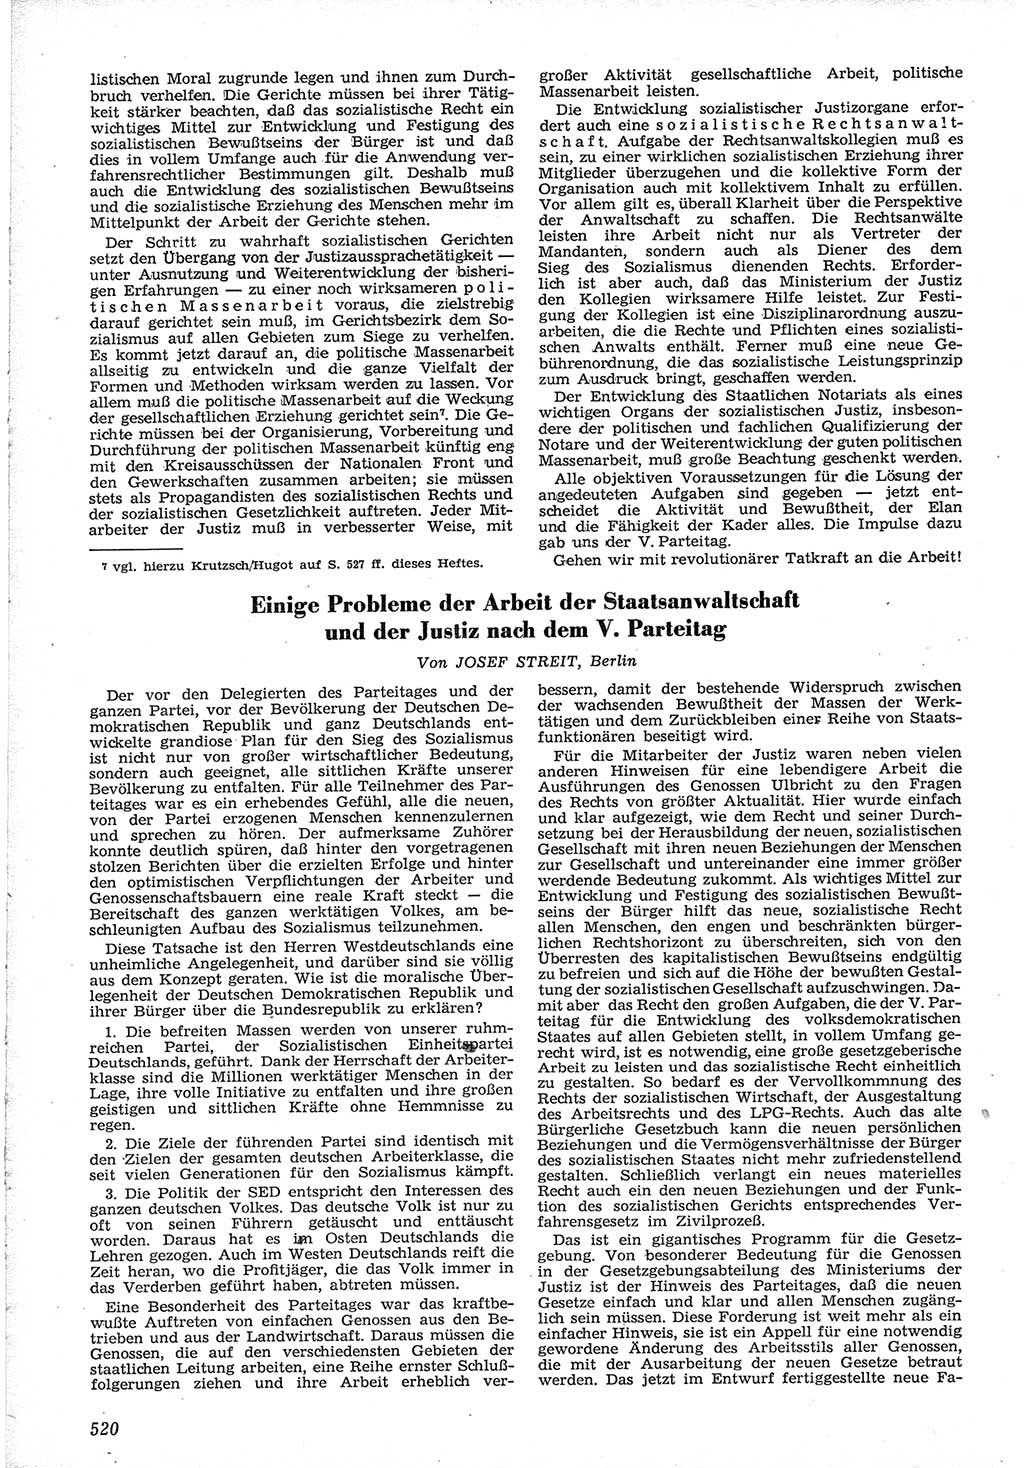 Neue Justiz (NJ), Zeitschrift für Recht und Rechtswissenschaft [Deutsche Demokratische Republik (DDR)], 12. Jahrgang 1958, Seite 520 (NJ DDR 1958, S. 520)